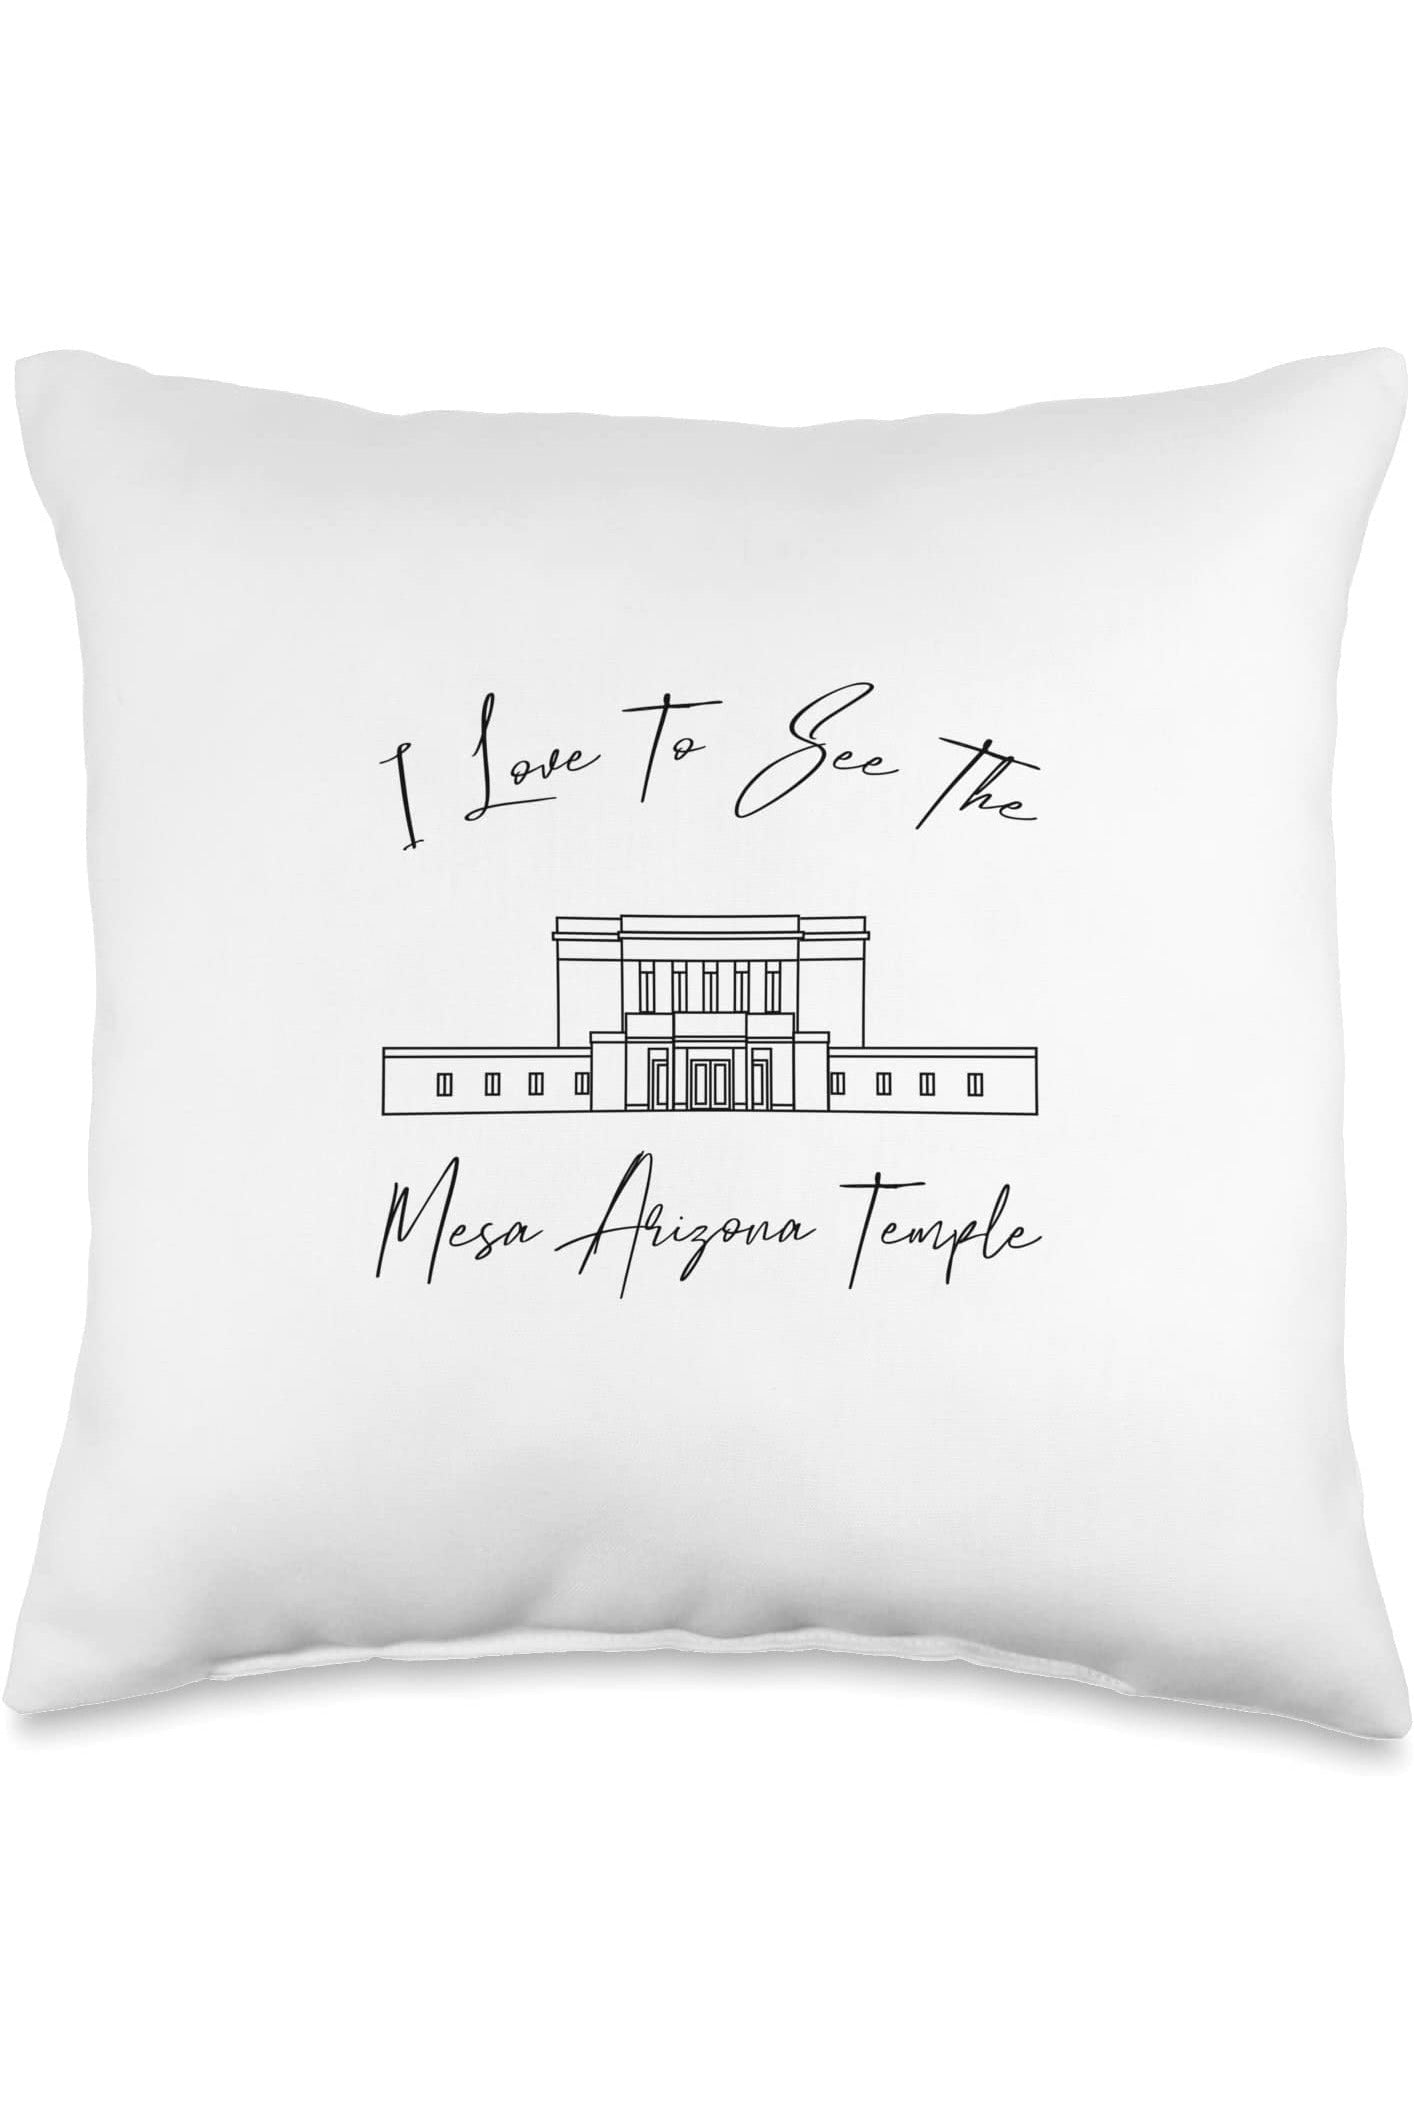 Mesa Arizona Temple Throw Pillows - Calligraphy Style (English) US